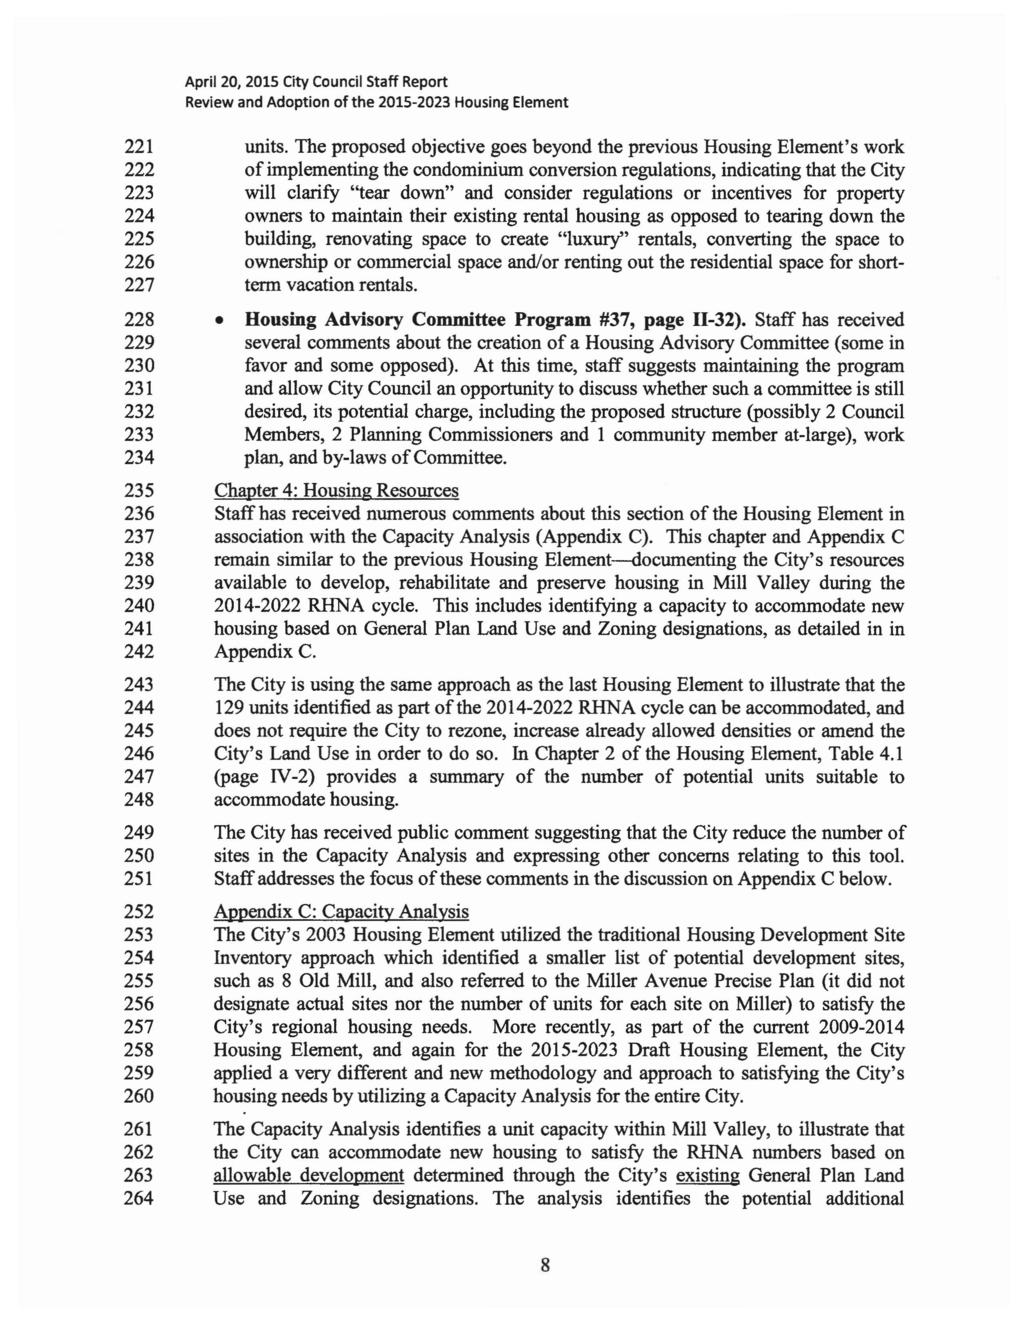 April 20, 2015 City Council 5taff Report 221 units.